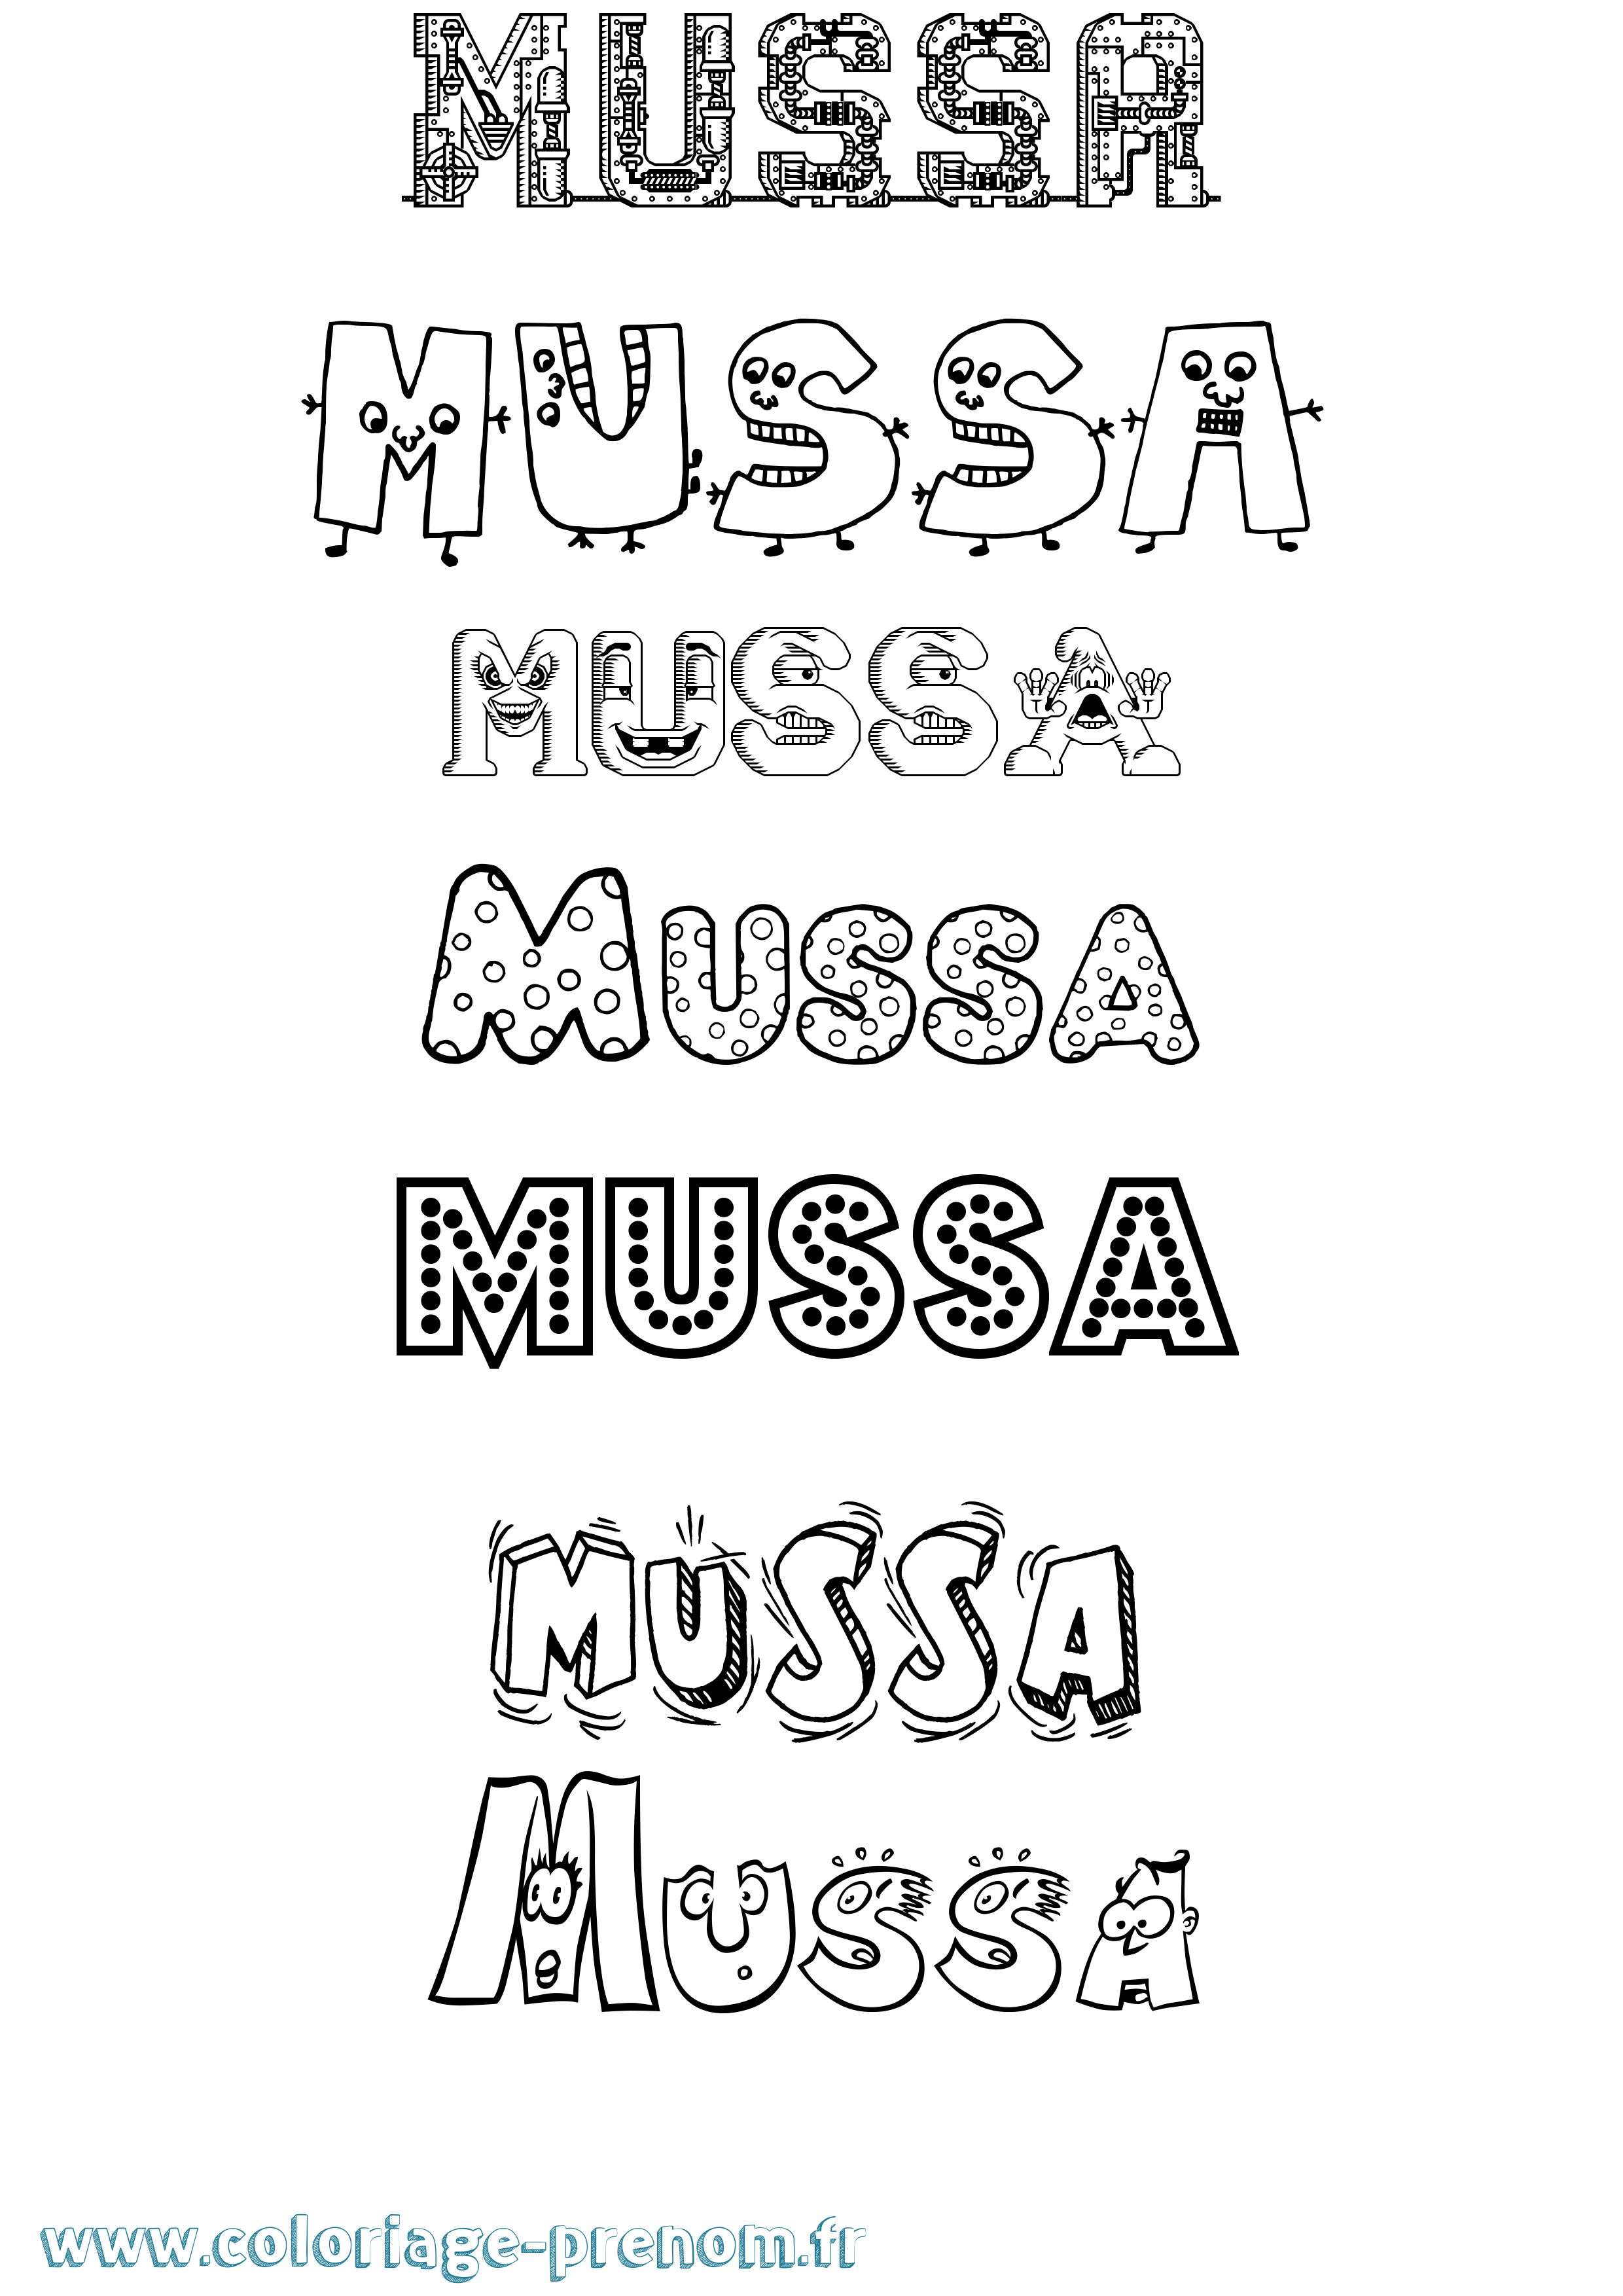 Coloriage prénom Mussa Fun